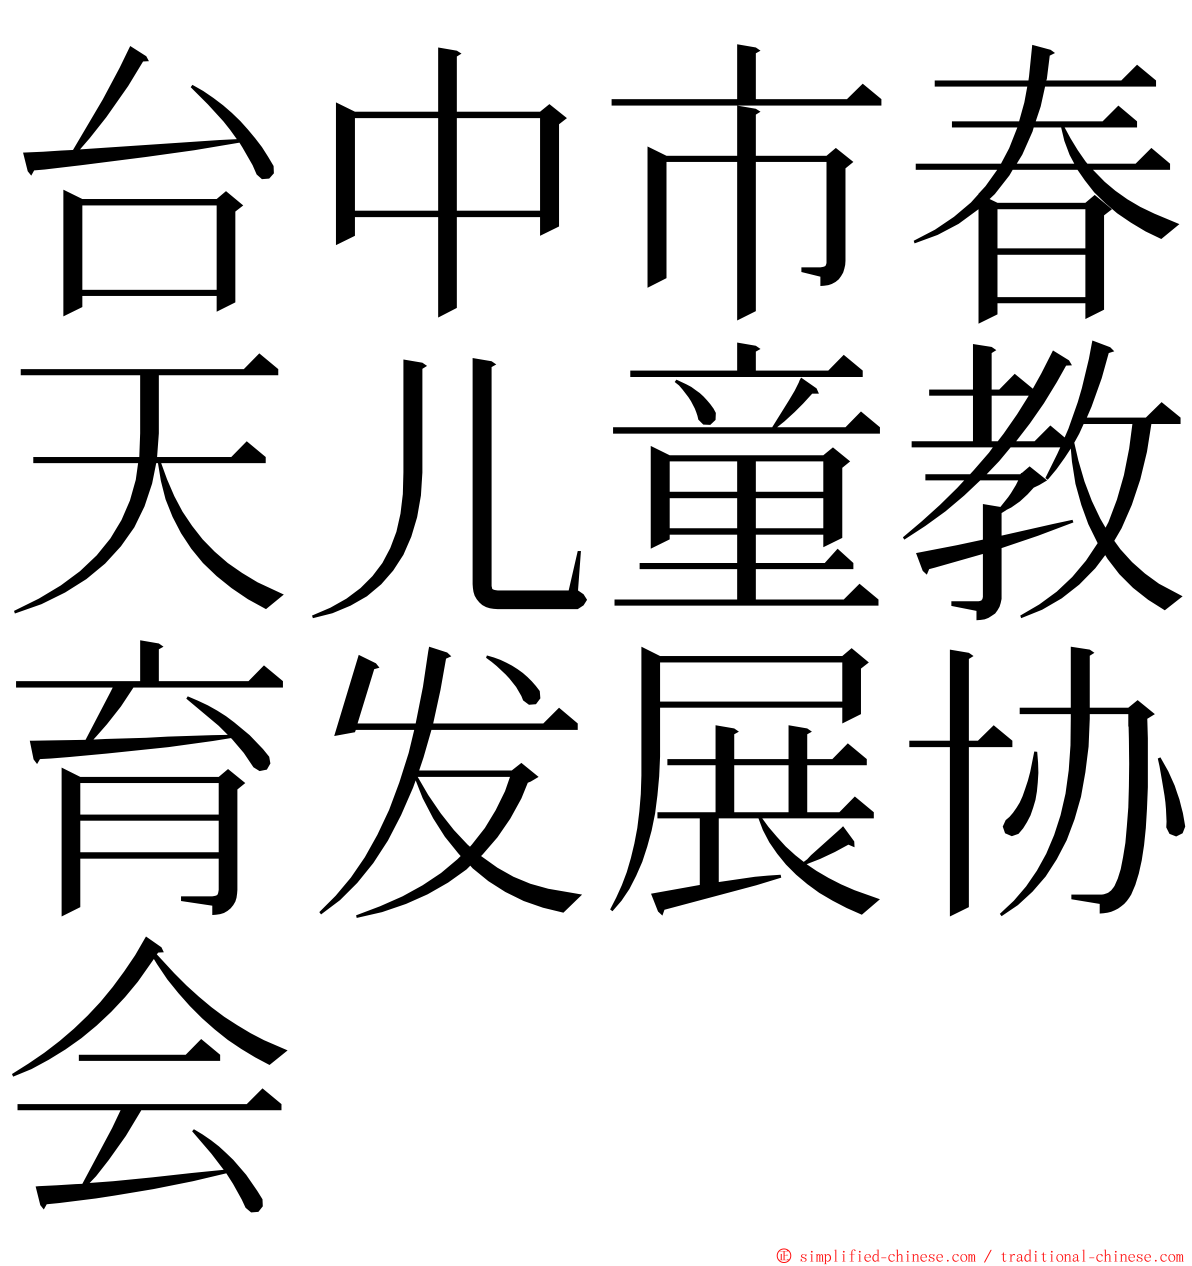 台中市春天儿童教育发展协会 ming font